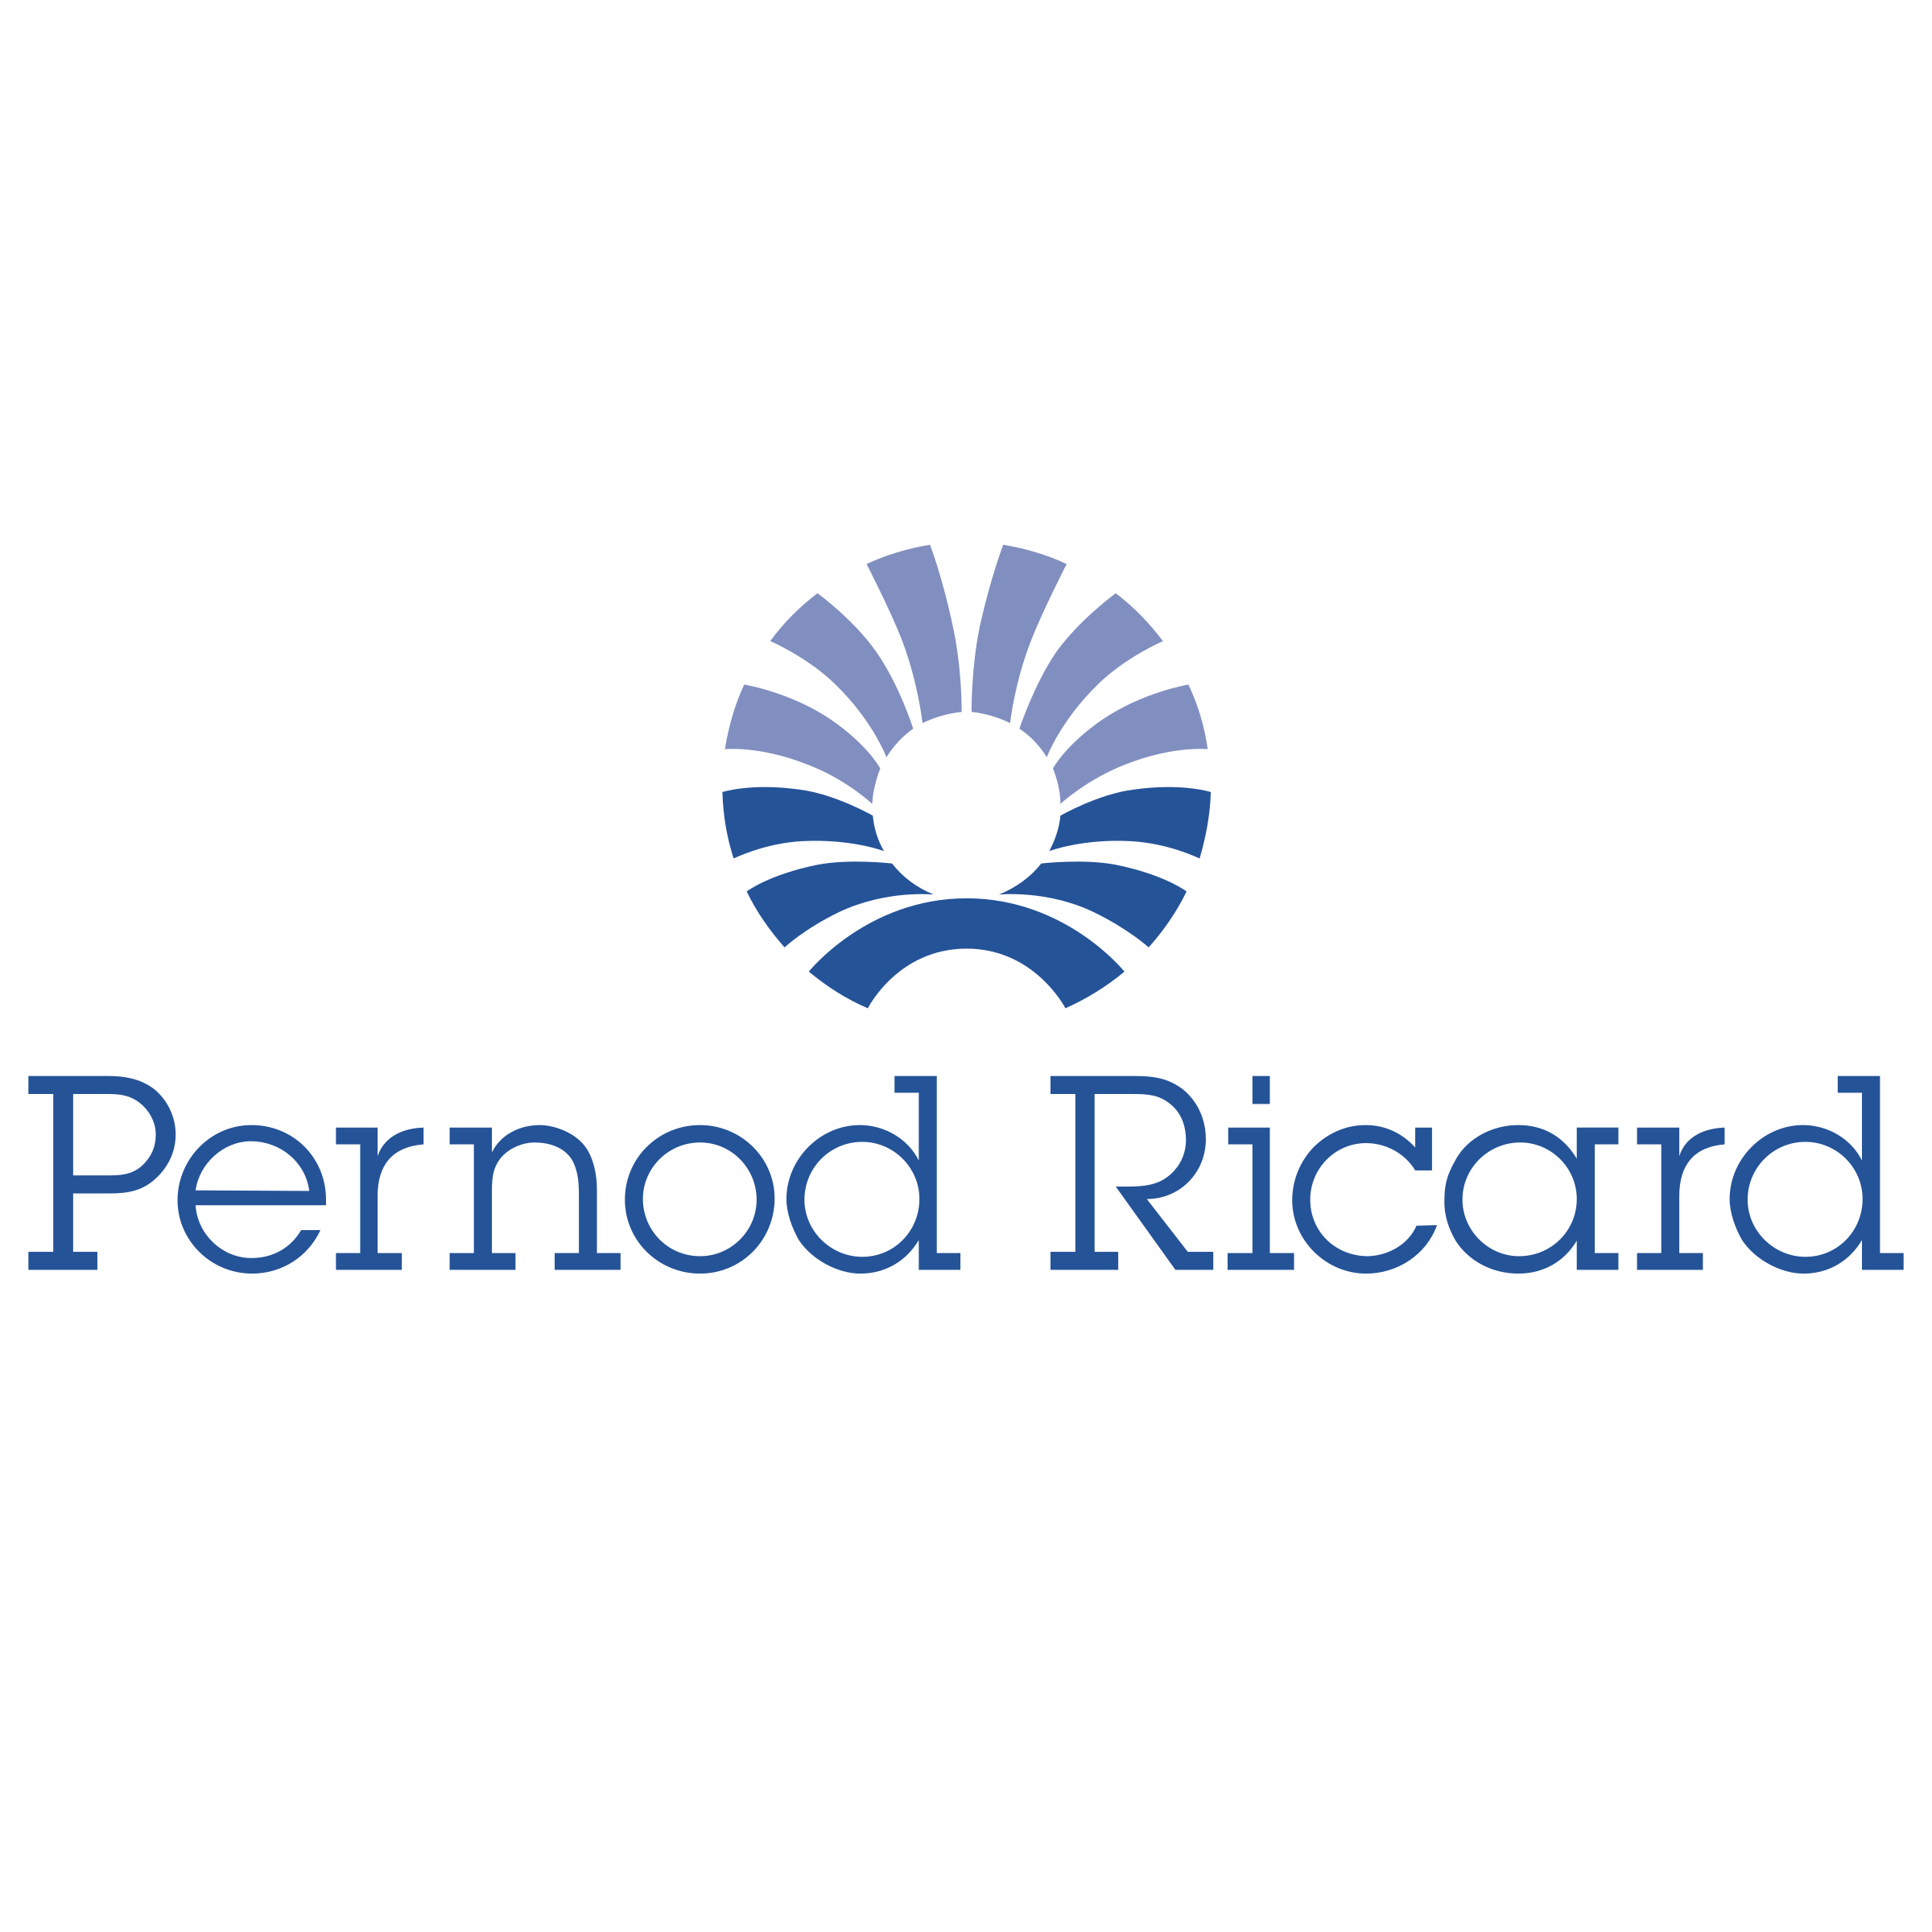 pernod-ricard-logo-png-transparent.png